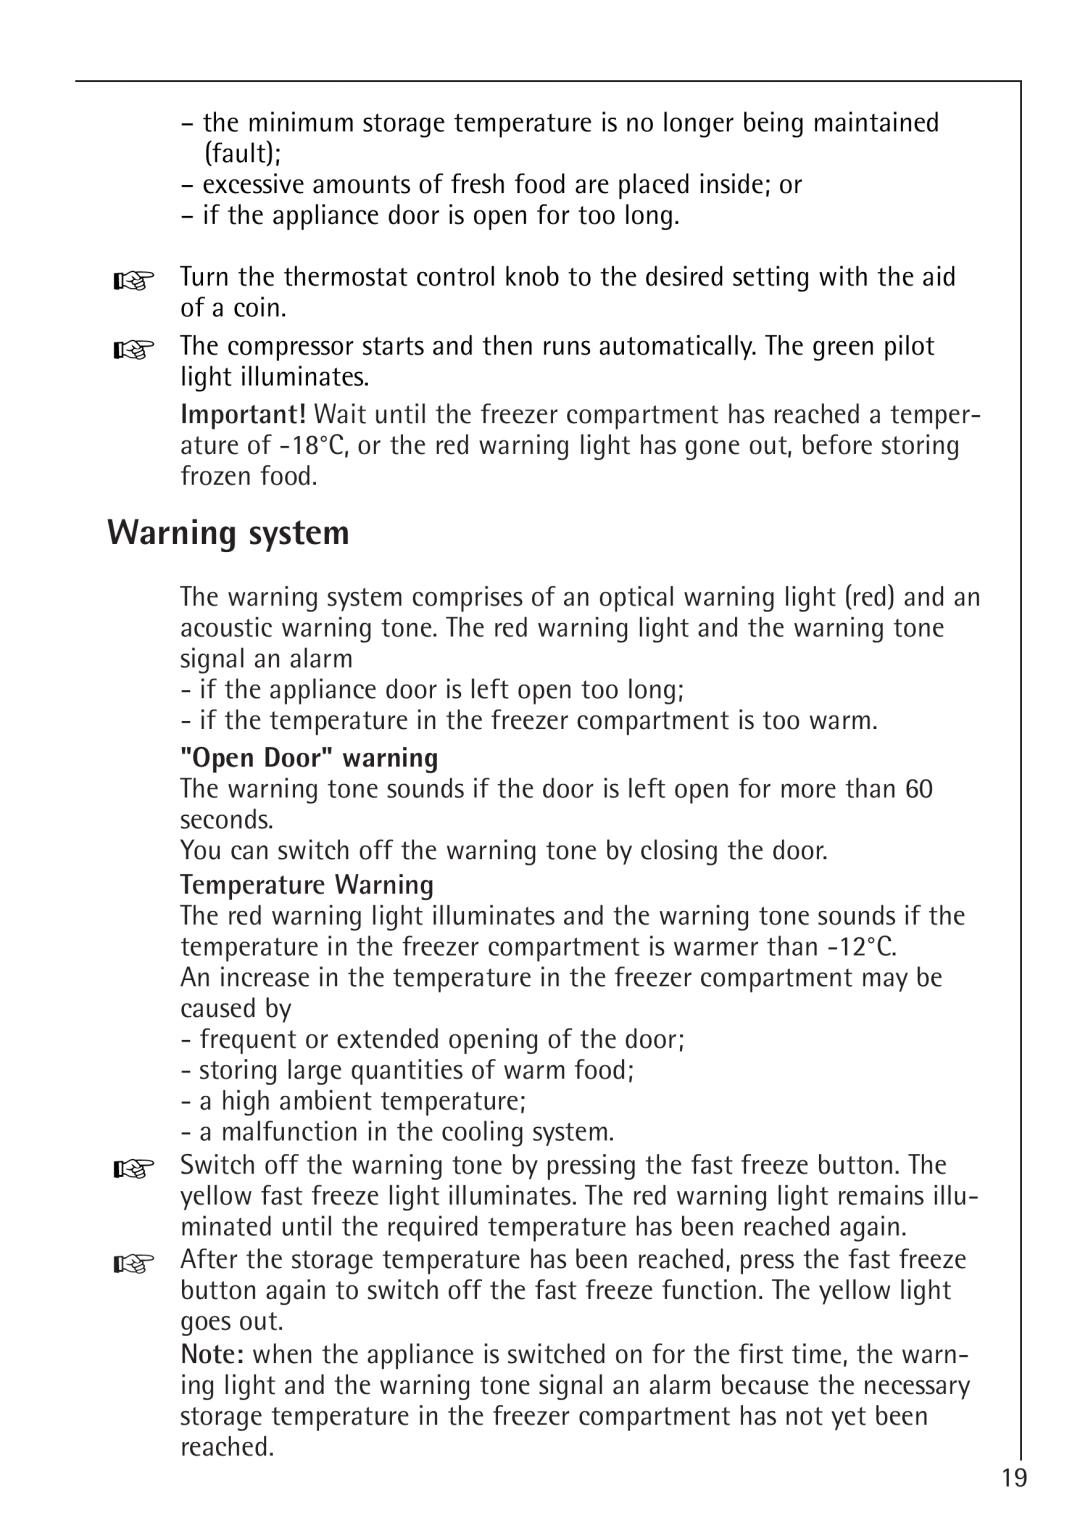 Electrolux 66050i installation instructions Warning system, Open Door warning, Temperature Warning 